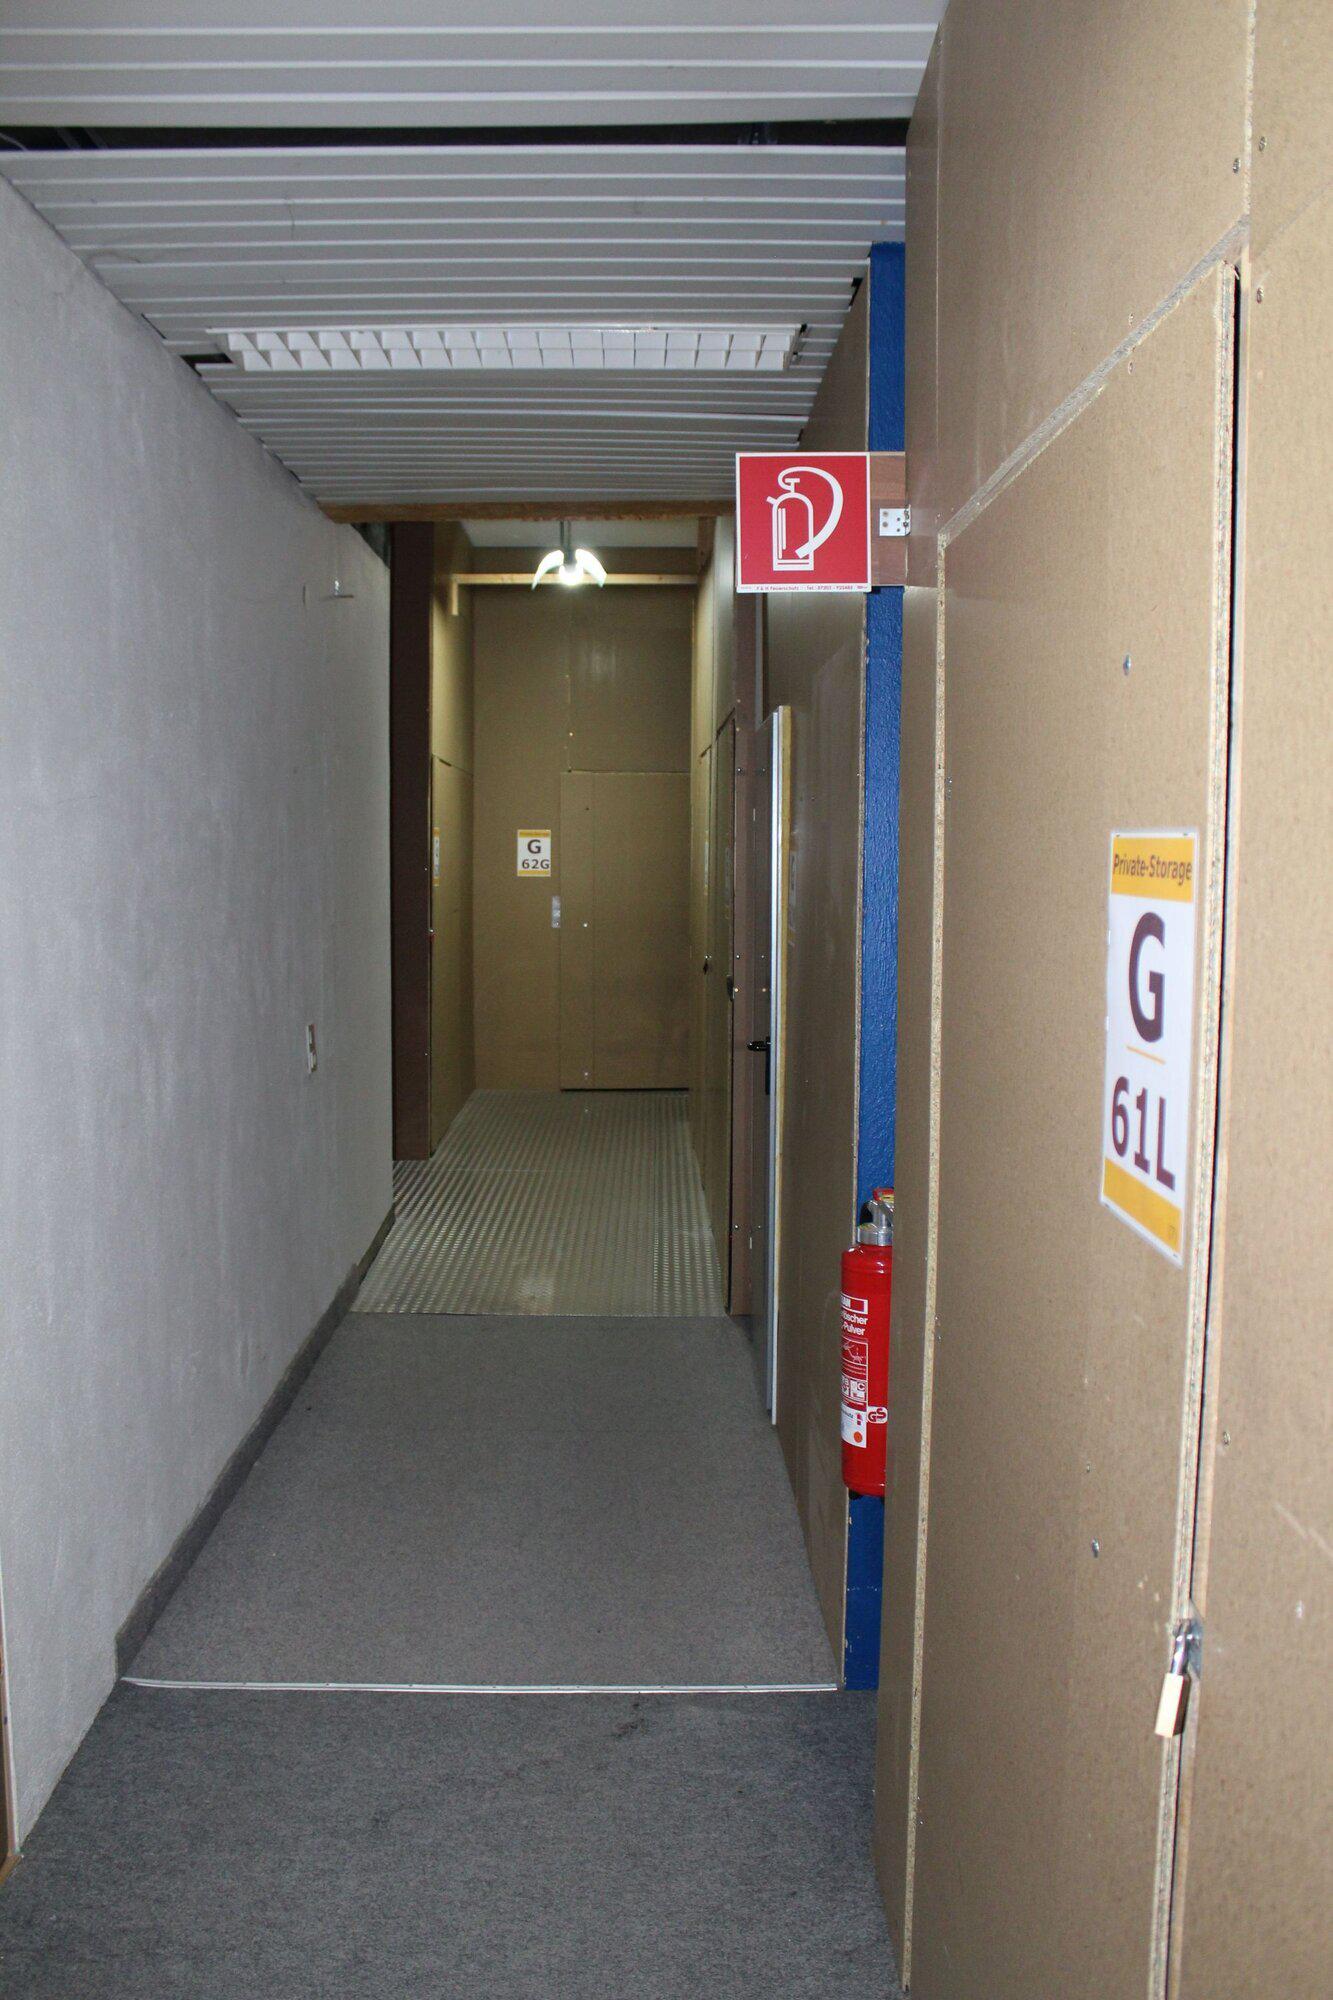 Bilder Private Storage Möbel einlagern - 3 x in Karlsruhe - Akten, Möbel etc. auf Zeit einlagern